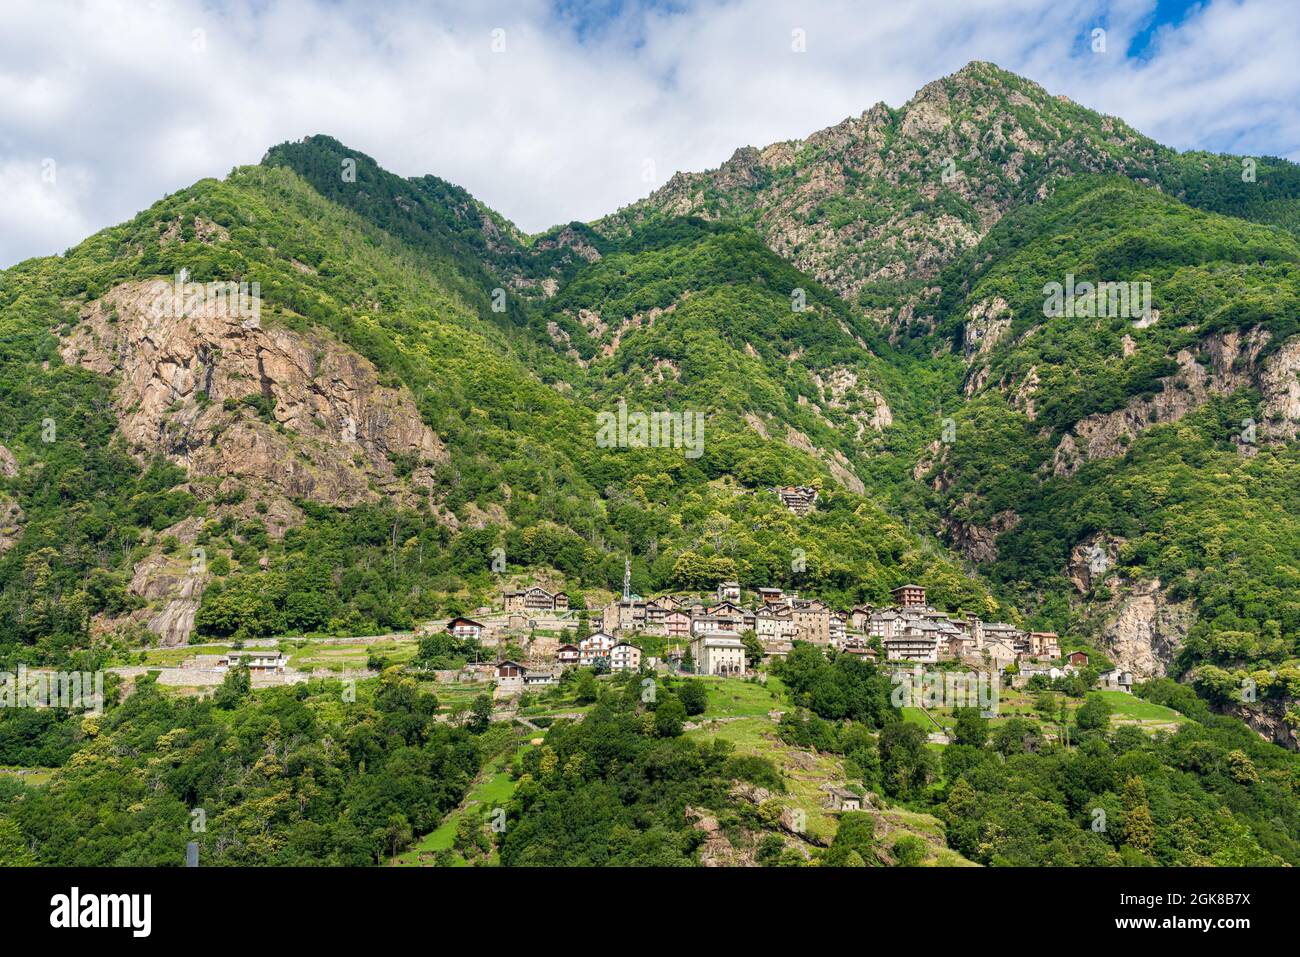 Vue panoramique sur Perloz, magnifique village de la vallée de Lys. Vallée d'Aoste, nord de l'Italie. Banque D'Images